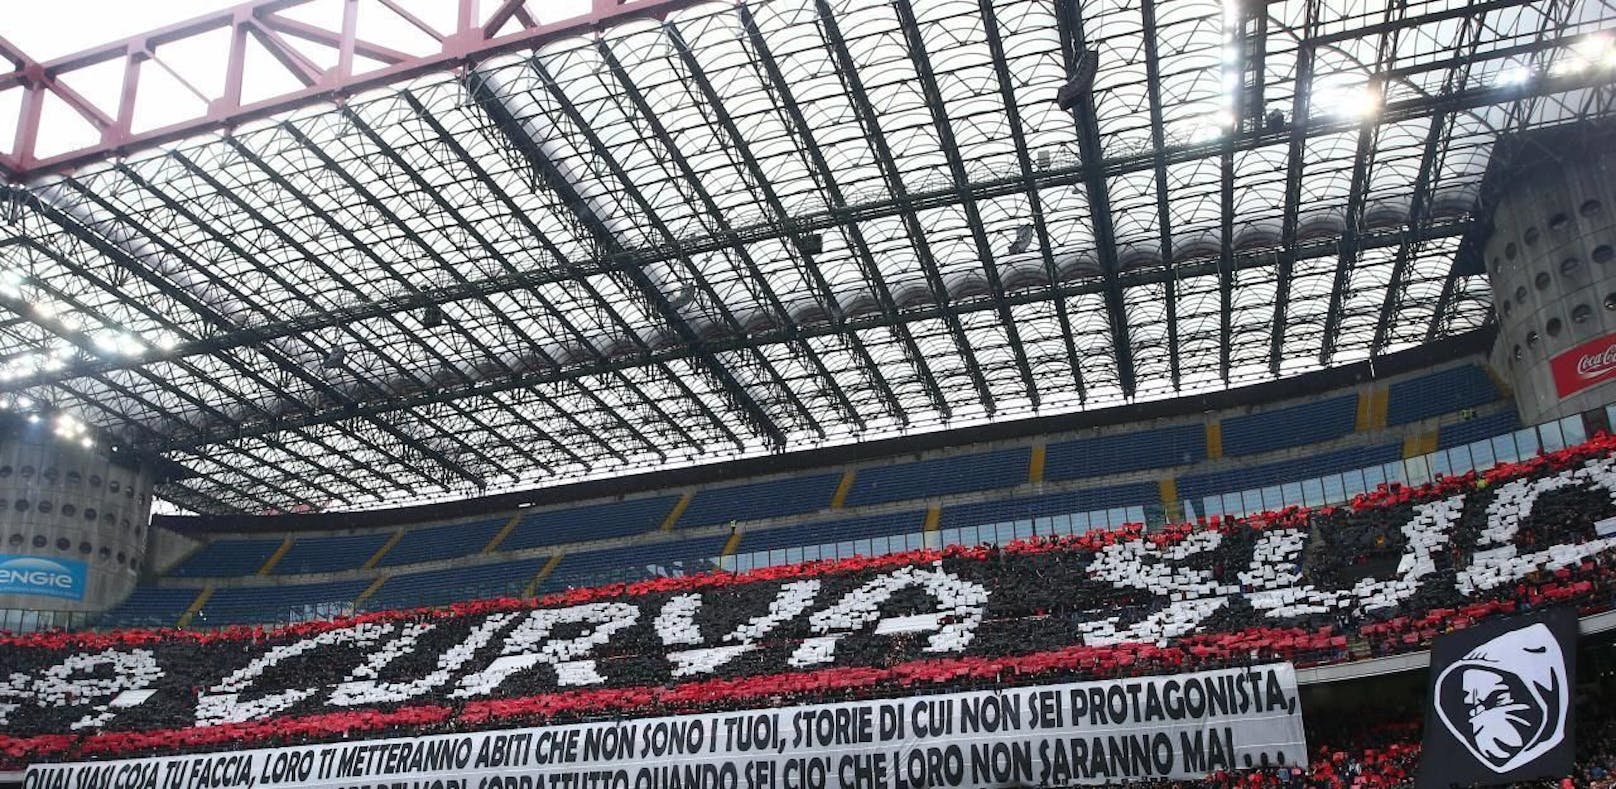 Das San Siro Stadion in Mailand steht vor dem Aus